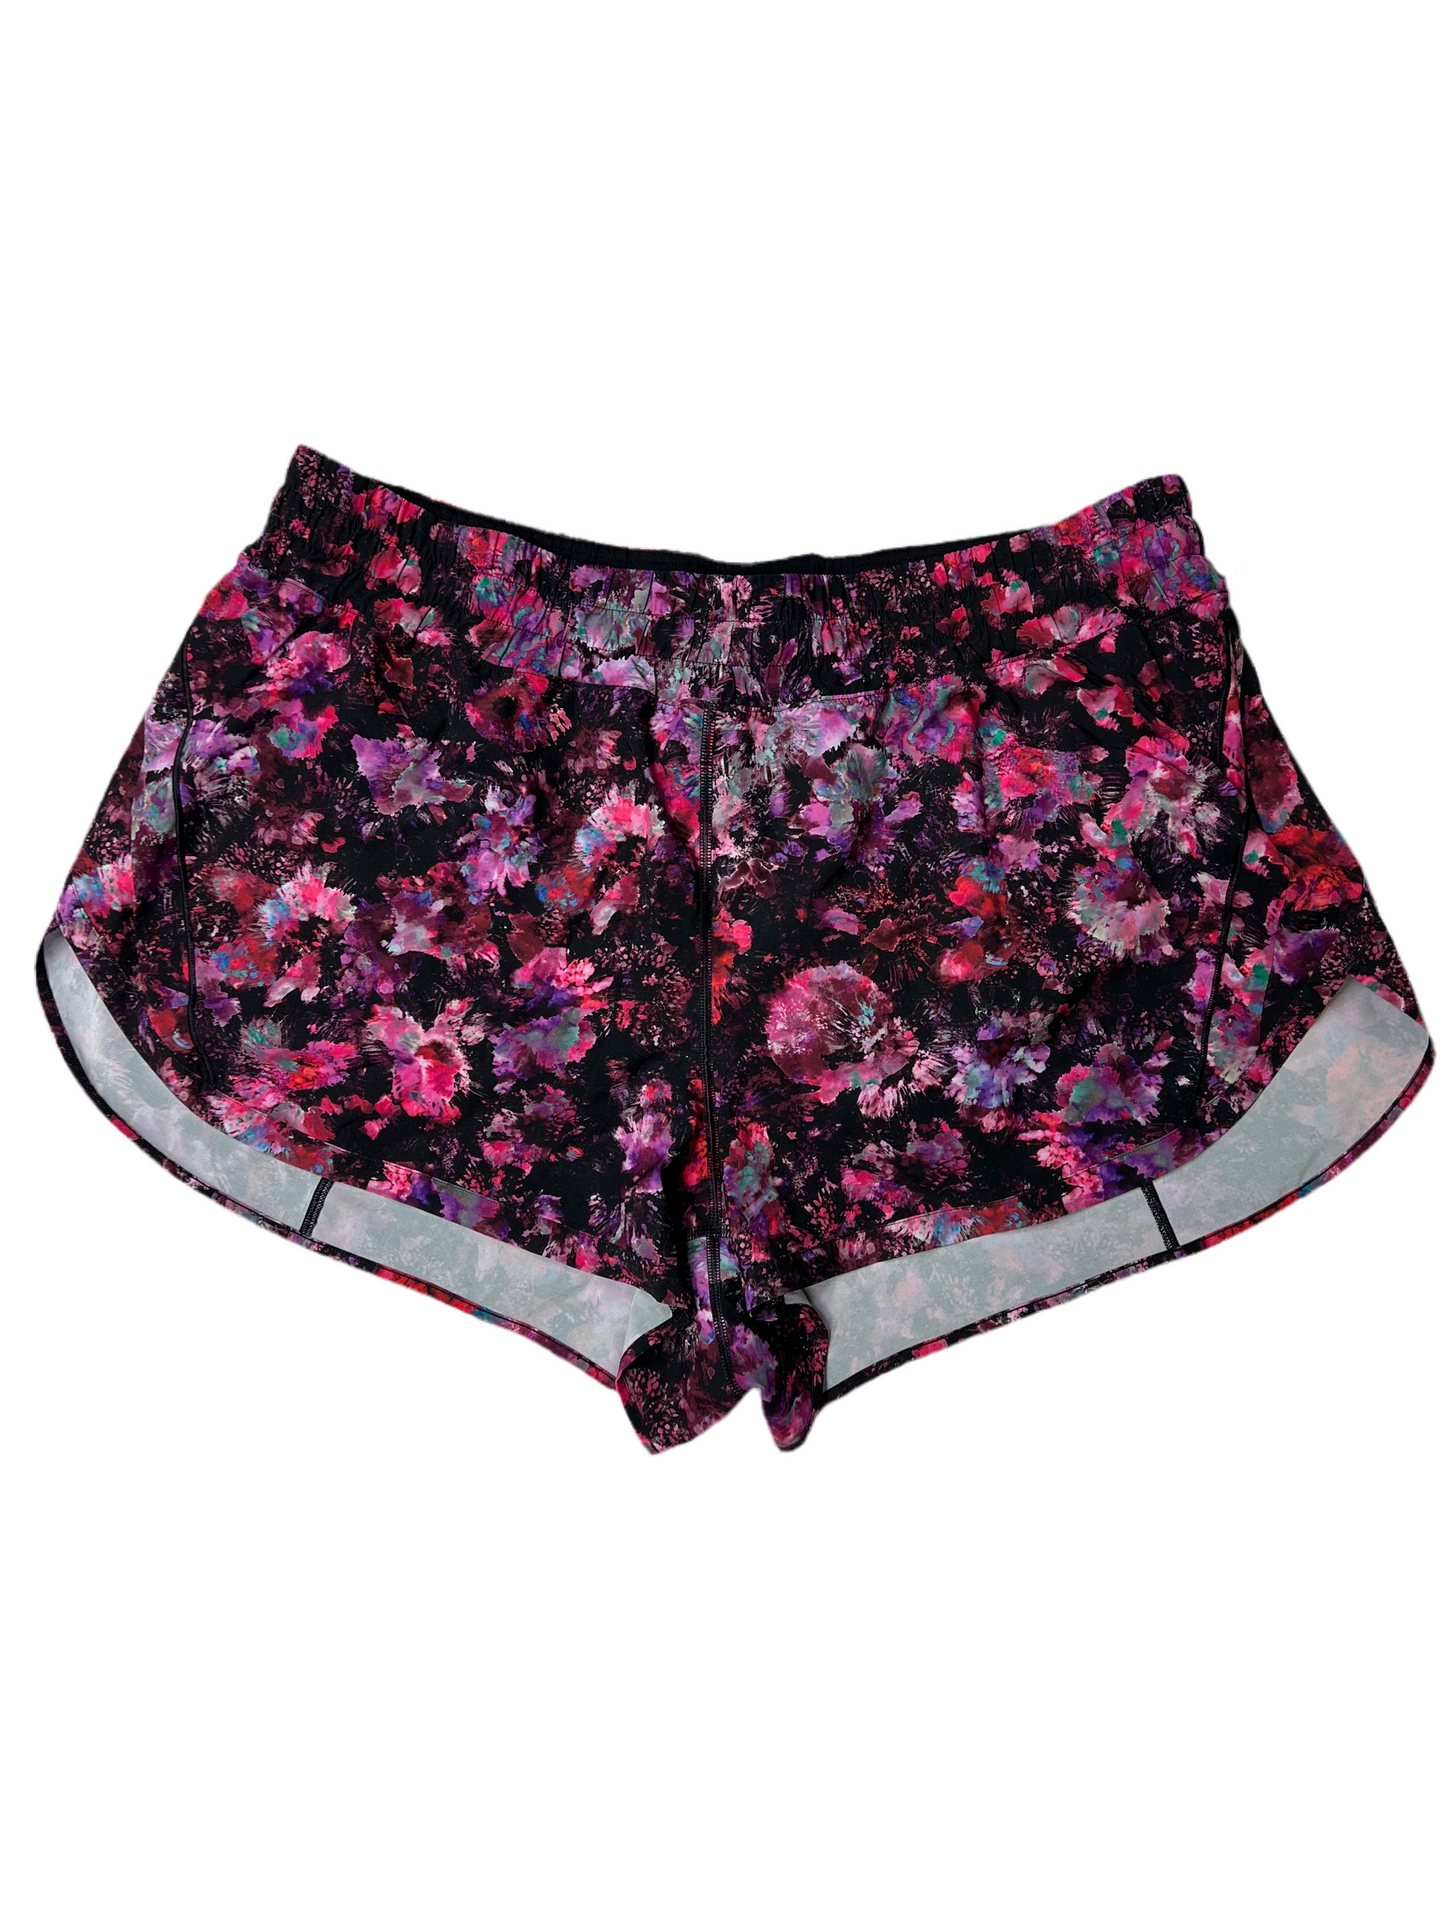 Floral Athletic Shorts Lululemon, Size 1x